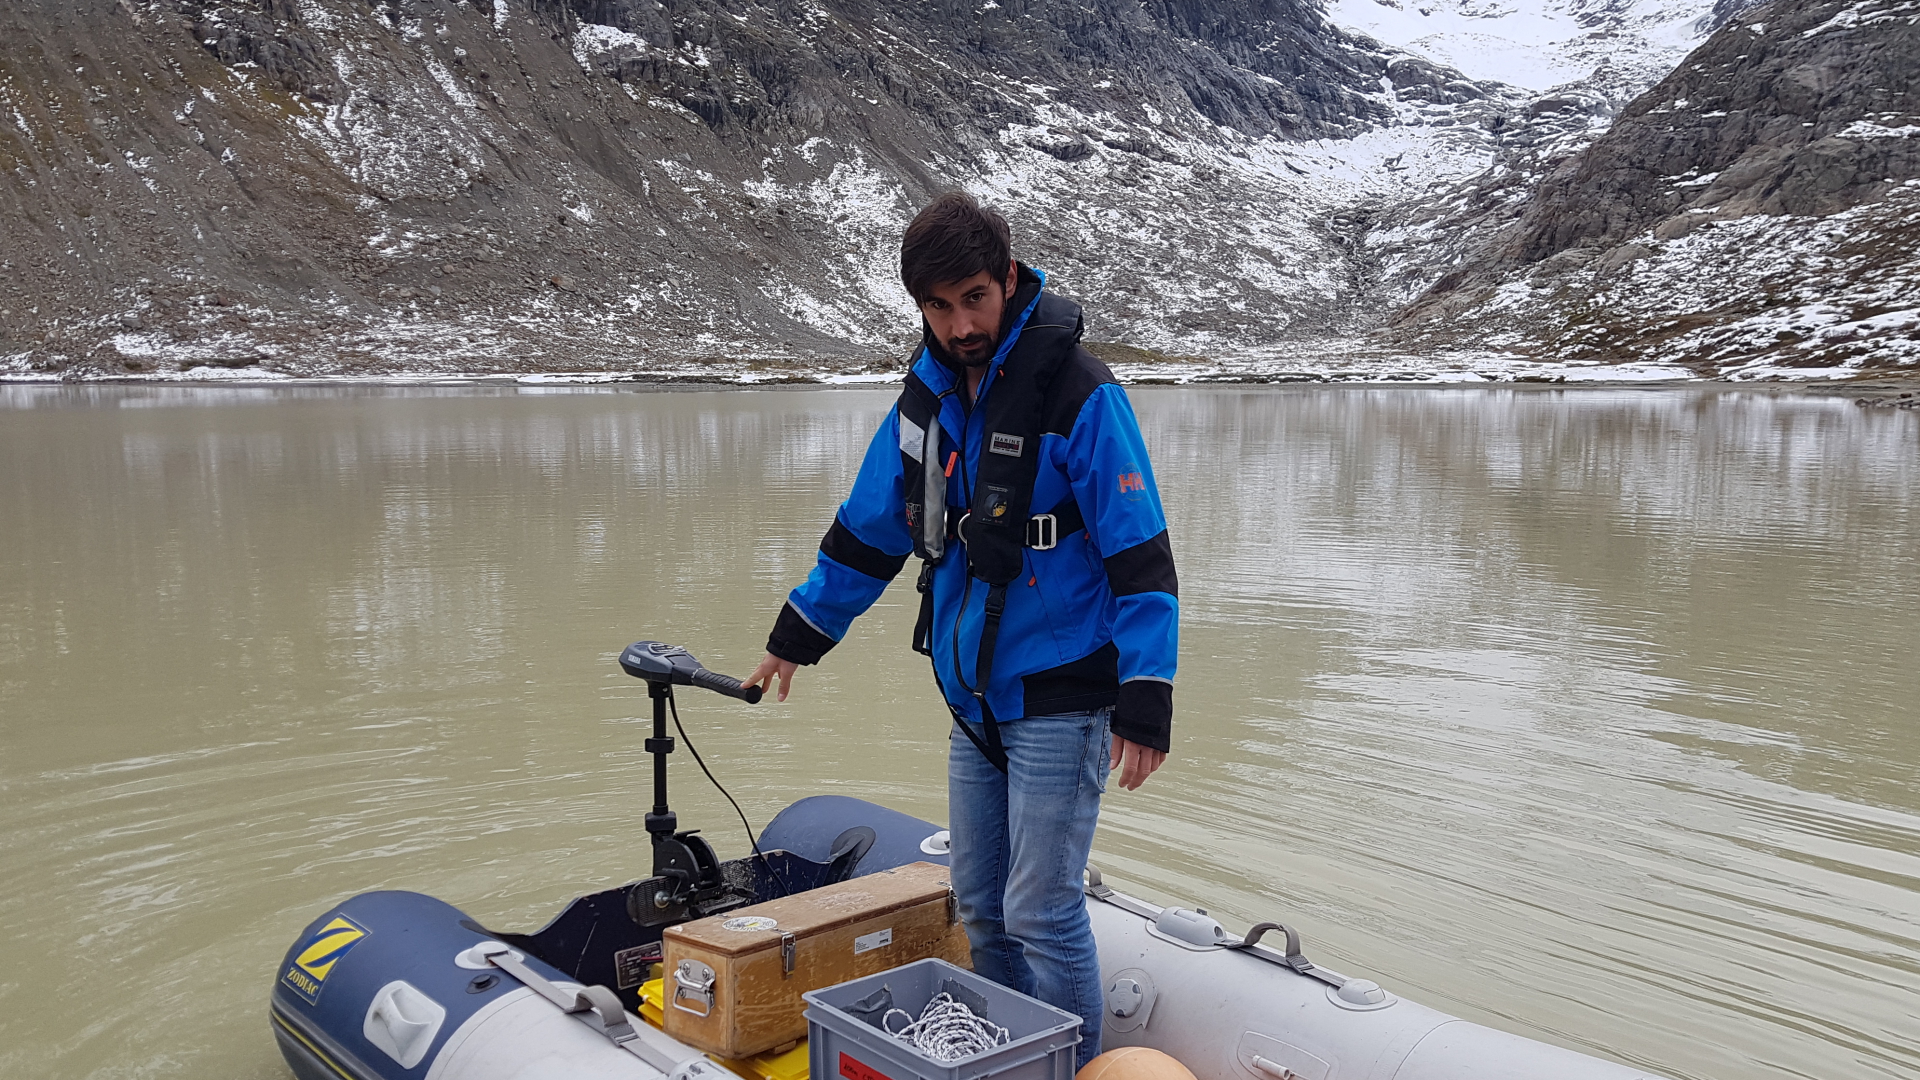  Michael Plüss, Techniker des schweizerischen Wasserforschungsinstituts, installiert eine Thermistorenkette auf dem Steisee. | dpa